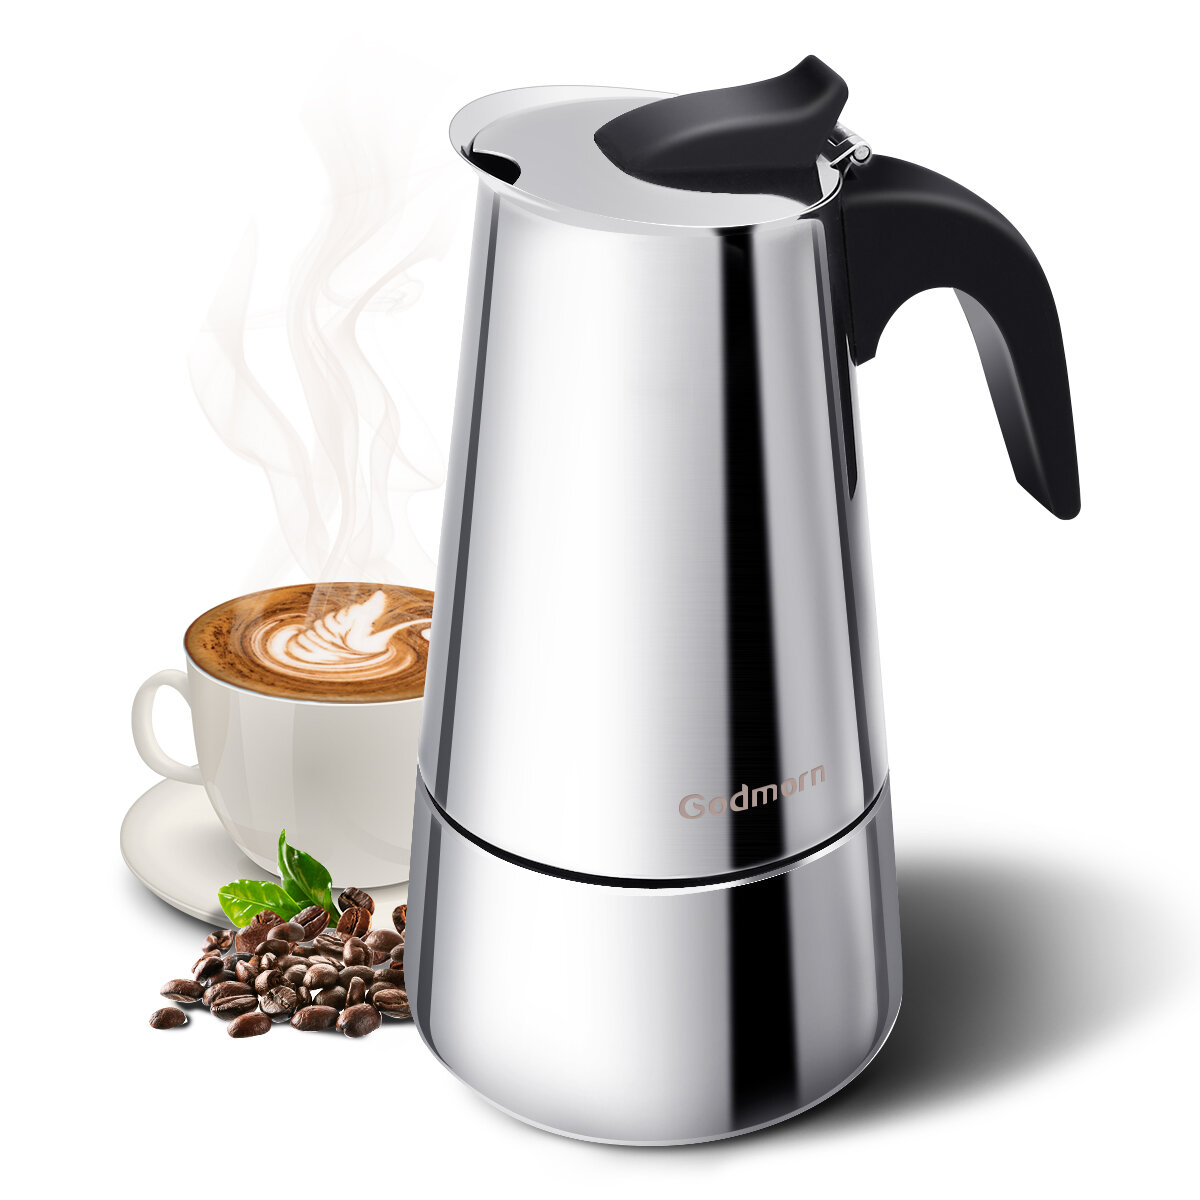 Godmorn Stovetop Espressomaker Moka Pot Percolator Italiaans koffiezetapparaat 300ml / 10oz / 6 Cup 